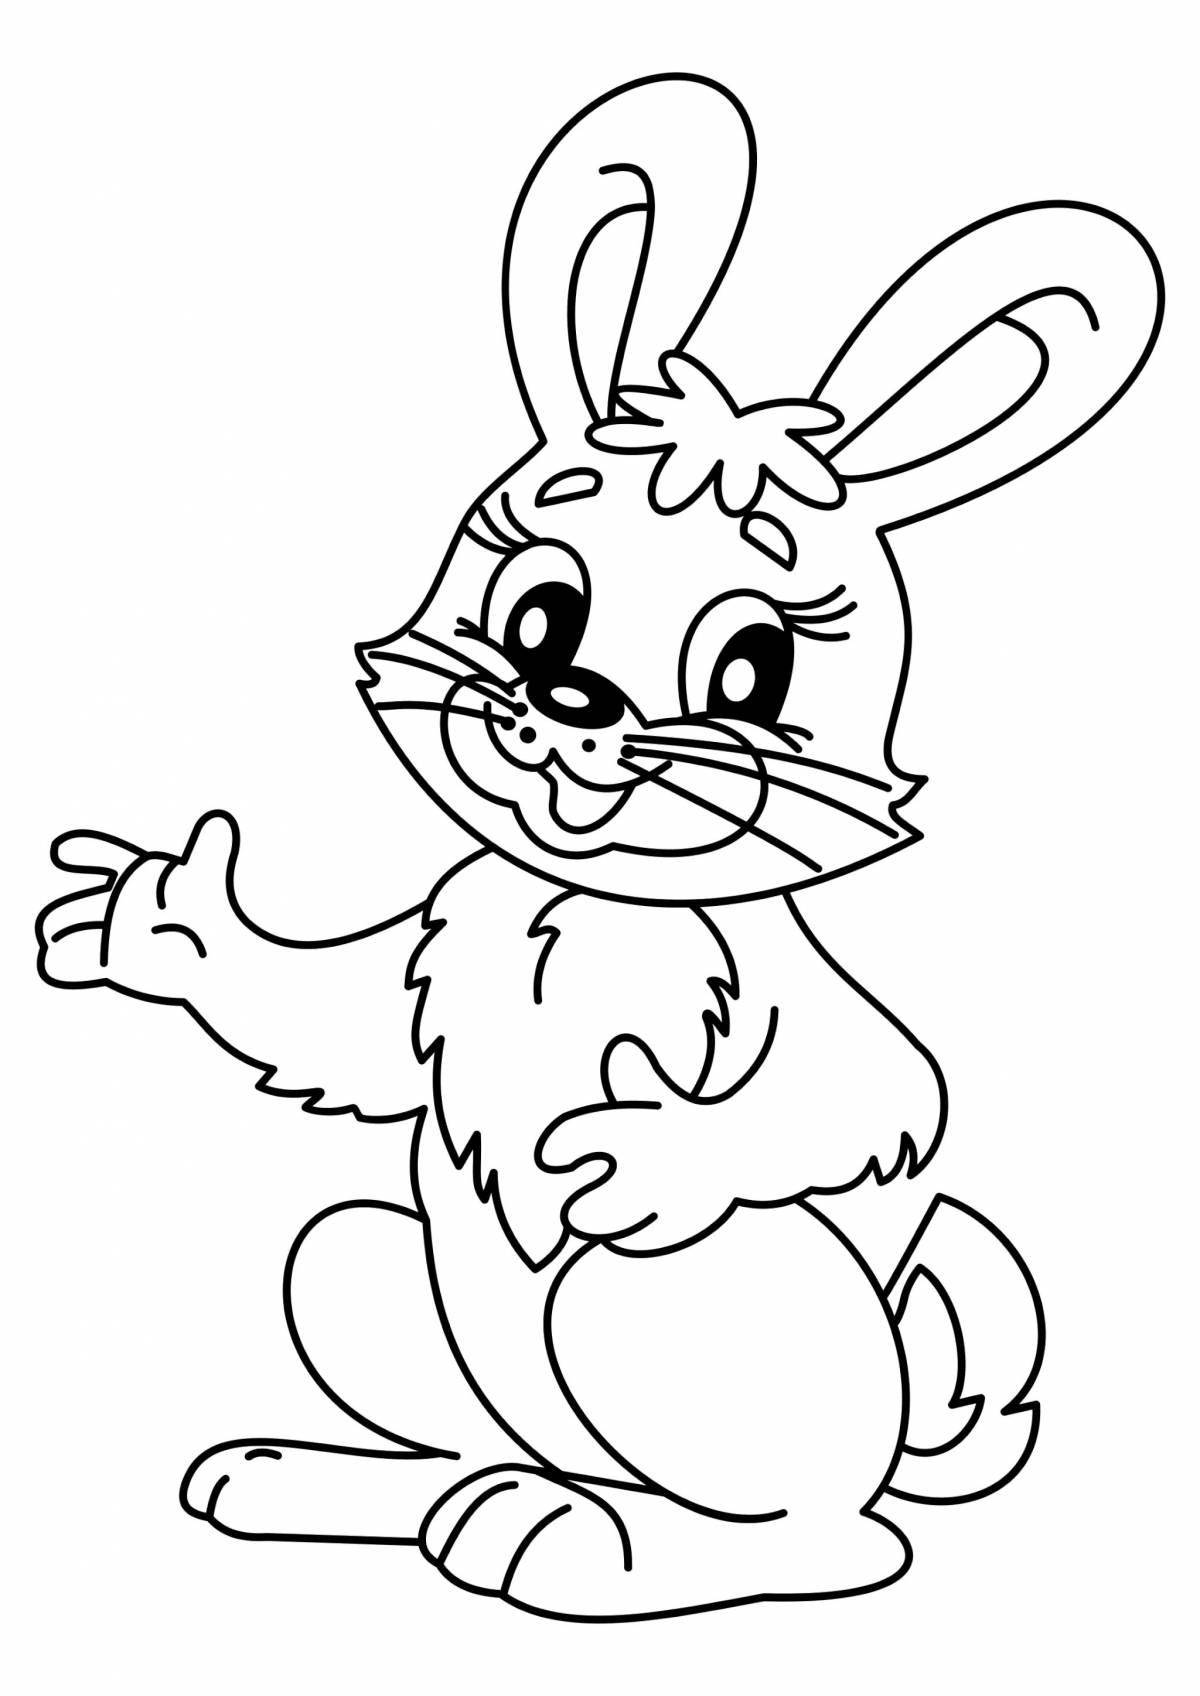 Радостный кролик раскраски для детей